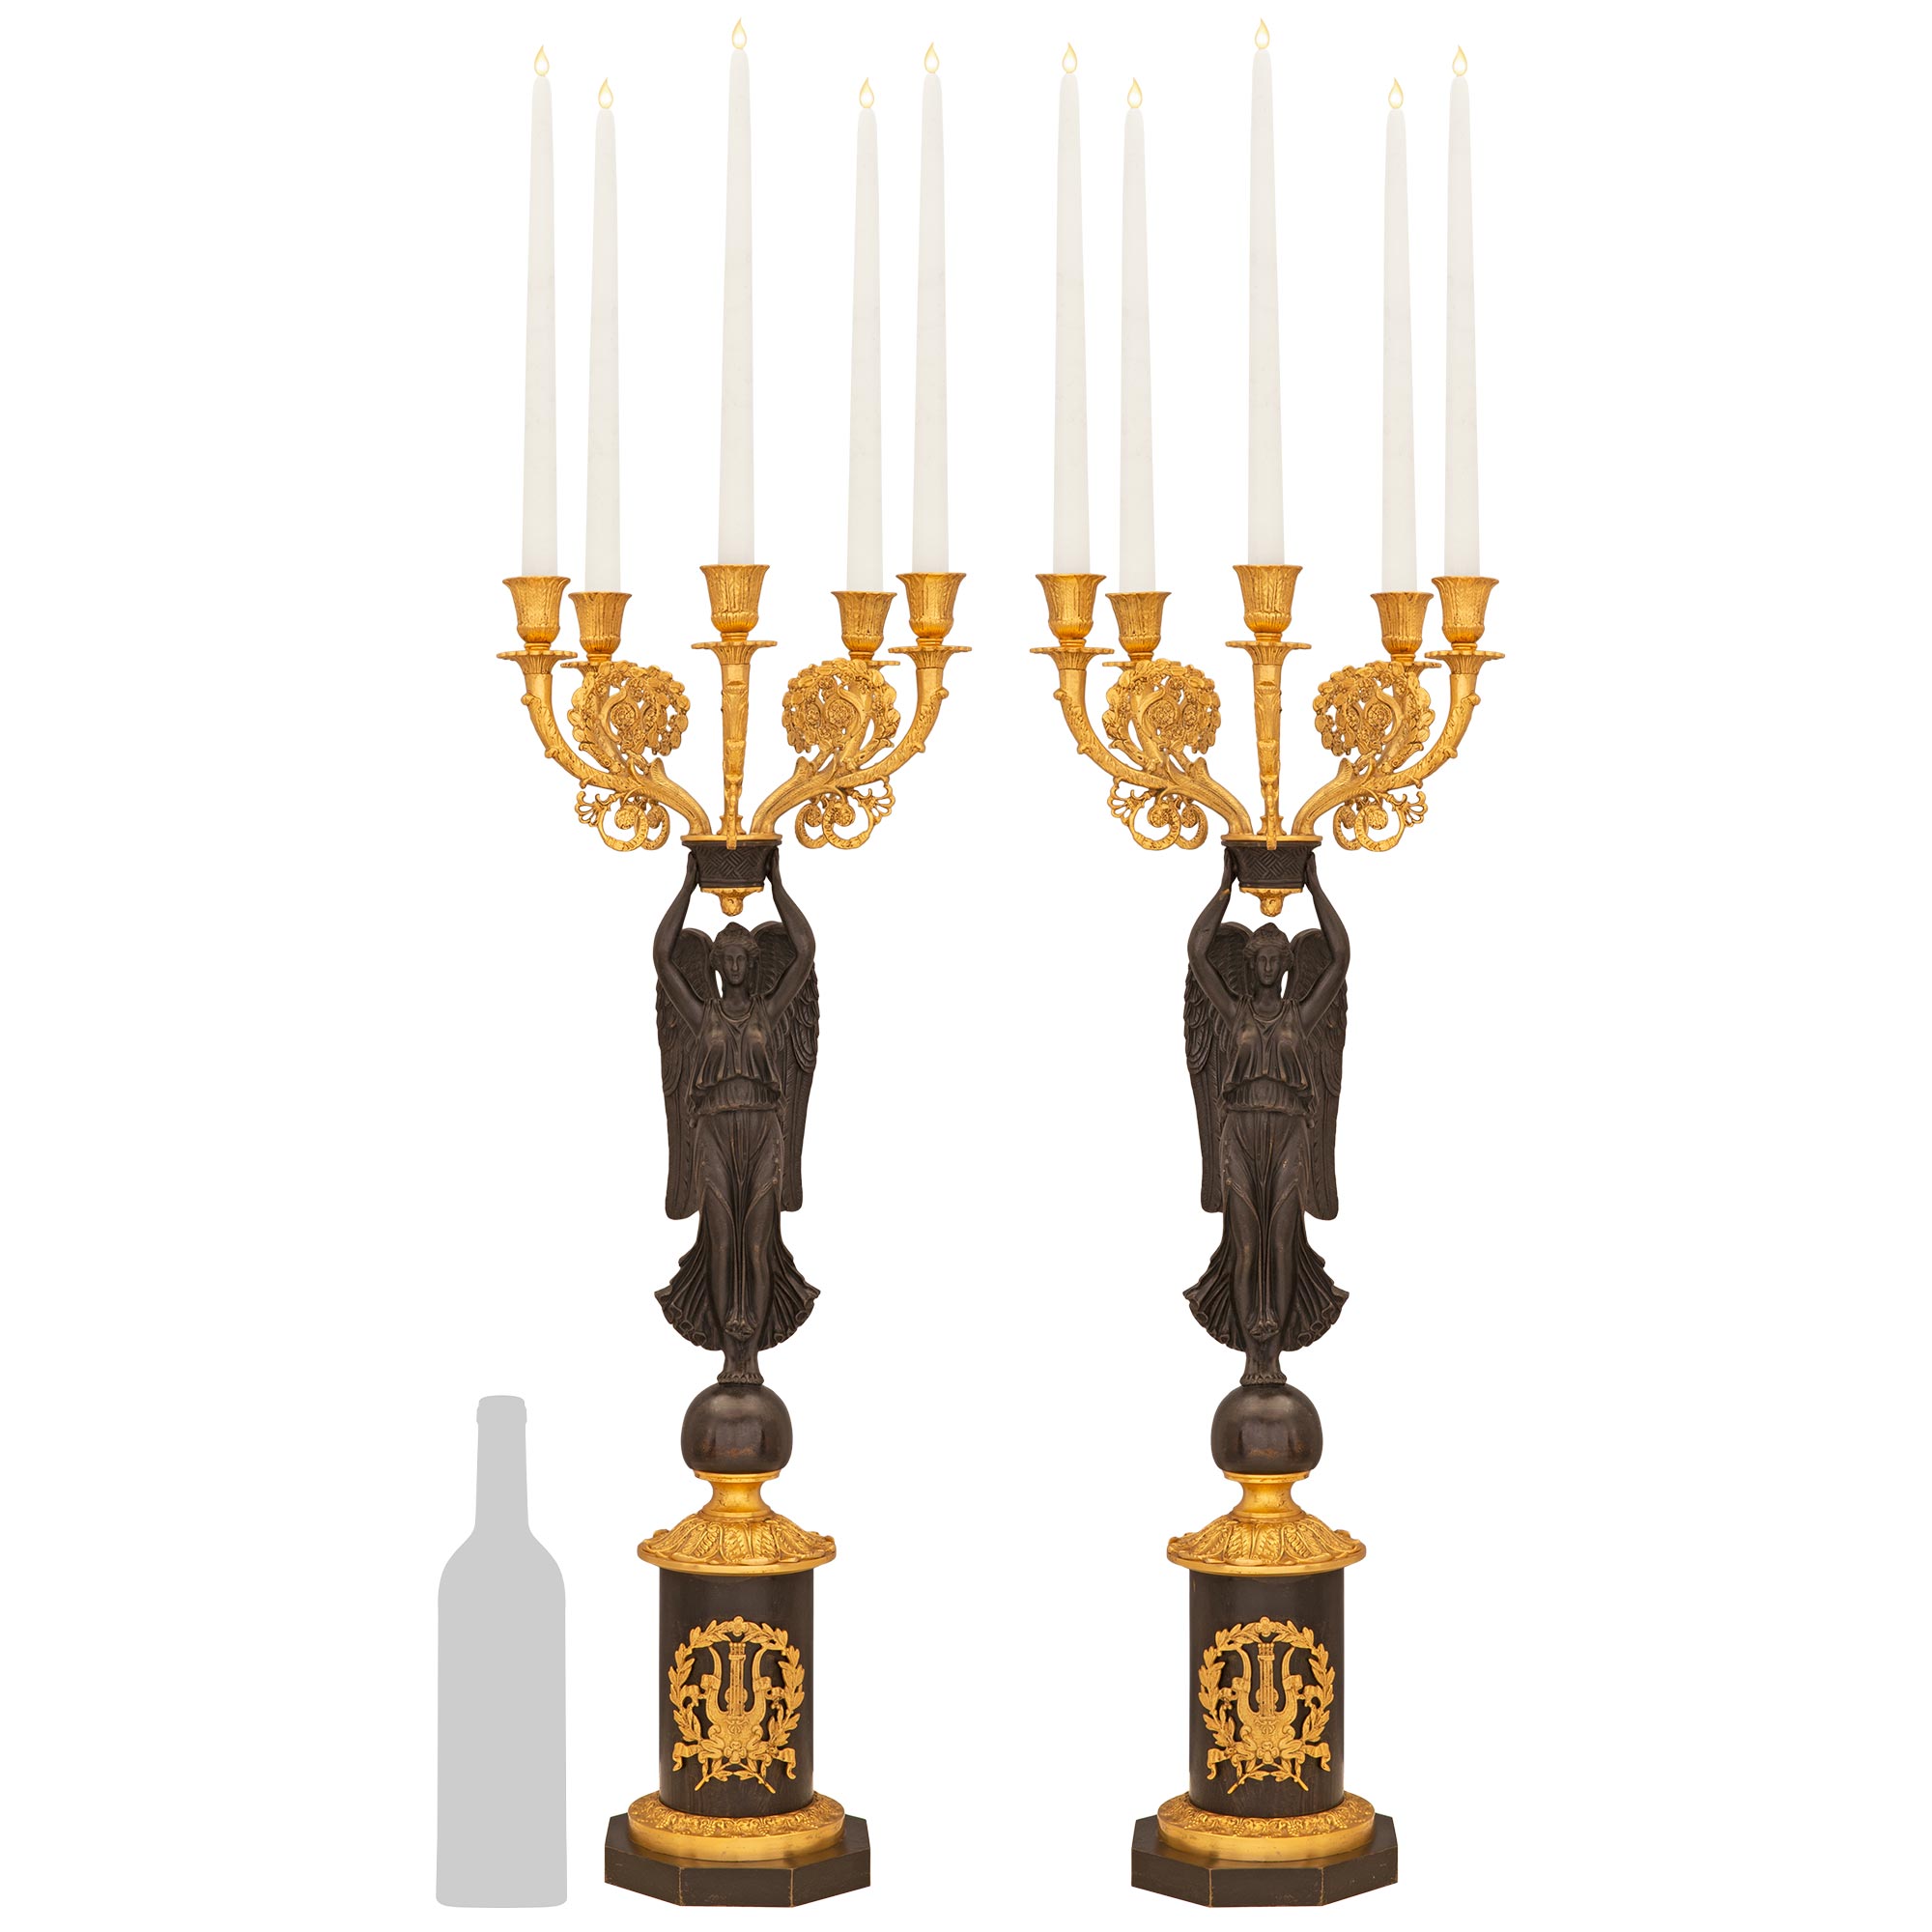 Paire de candélabres à cinq bras de style néoclassique français du XIXe siècle